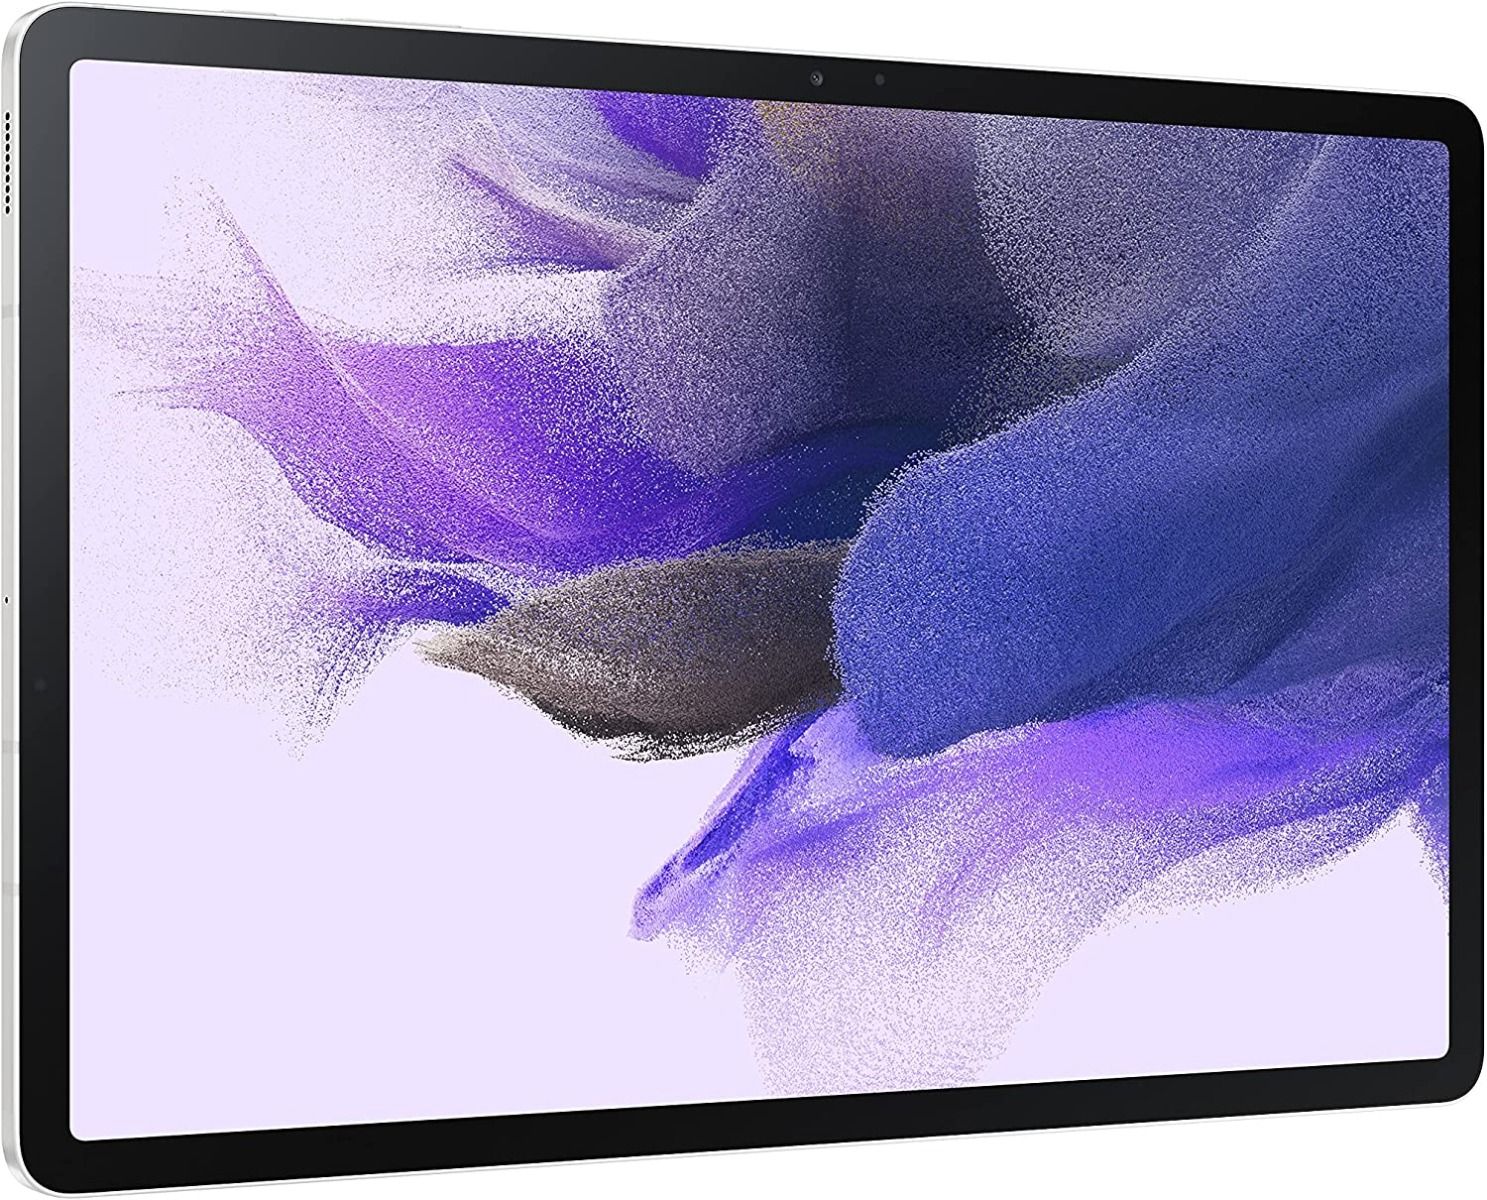 Samsung Galaxy Tab S7 FE Wifi Tablet 12.4 inch Display, 4GB Ram 64GB Storage Mystic Silver